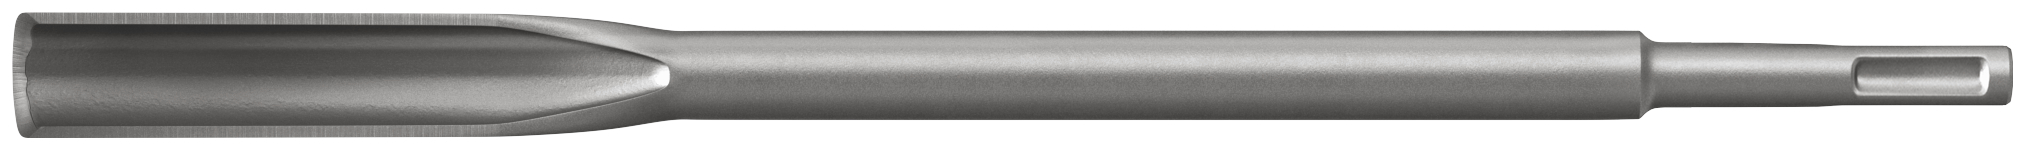 fischer SDS Plus I M-Hohl 22/250 punta martelli perforatori (1 Pz.) Scalpello ad alte prestazioni con attacco SDS Plus e SDS Max.